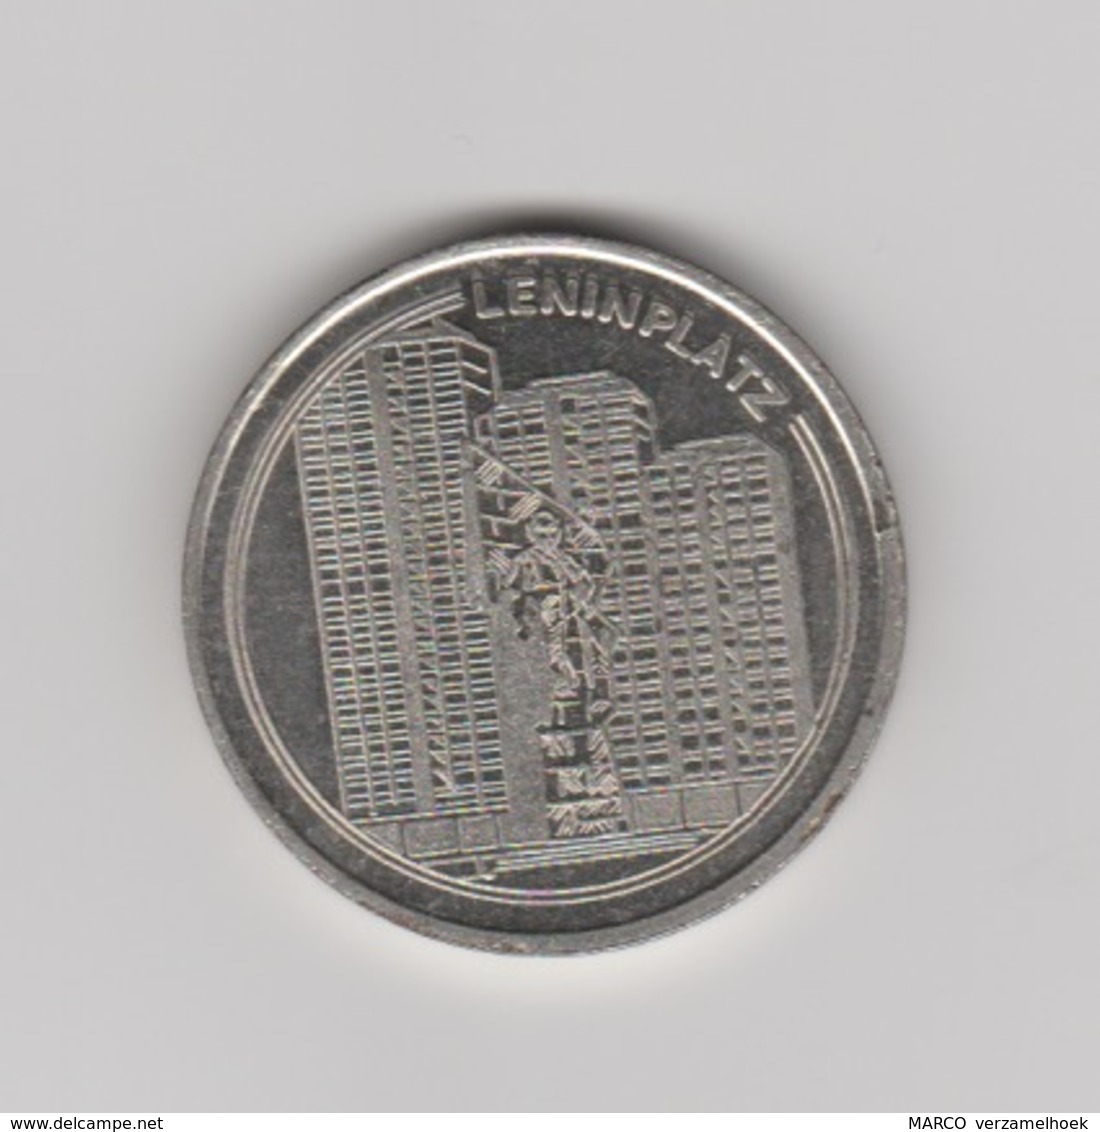 VEB Wohnungsbaukombinat "fritz Heckert" Berlin-berlijn (D) 1949-1989 Leninplatz - Souvenirmunten (elongated Coins)